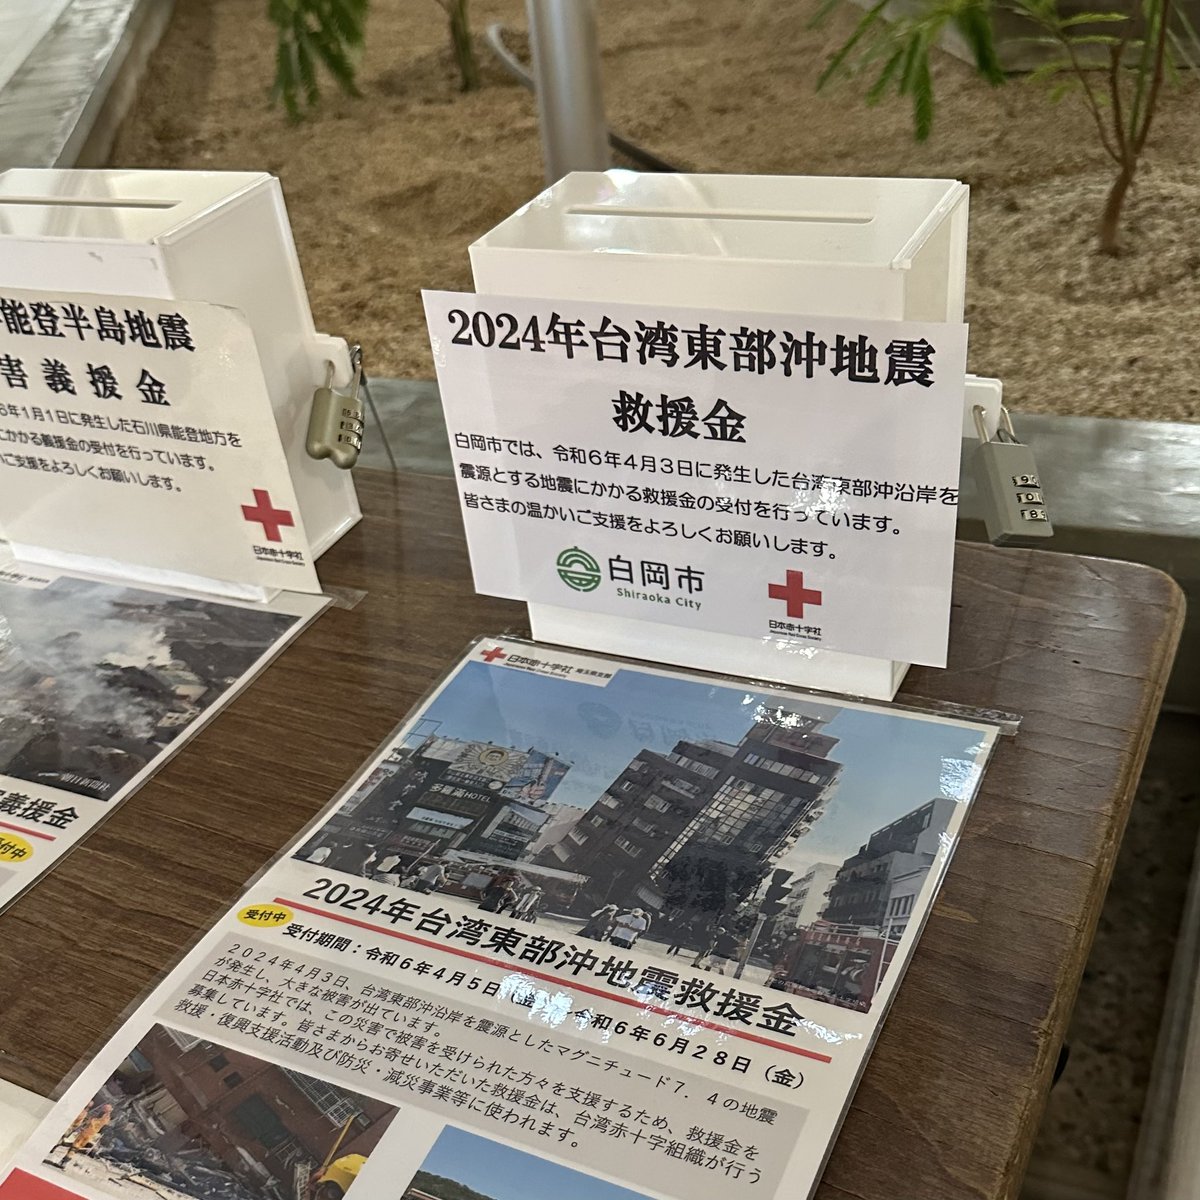 #台湾東部沖地震 でお亡くなりになられた方々に心からお悔やみを申し上げますとともに被災された方々に心よりお見舞い申し上げます。市役所正面玄関内に #救援金 の募金箱を設置しました。皆様の温かいご支援をよろしくお願いします。#白岡市